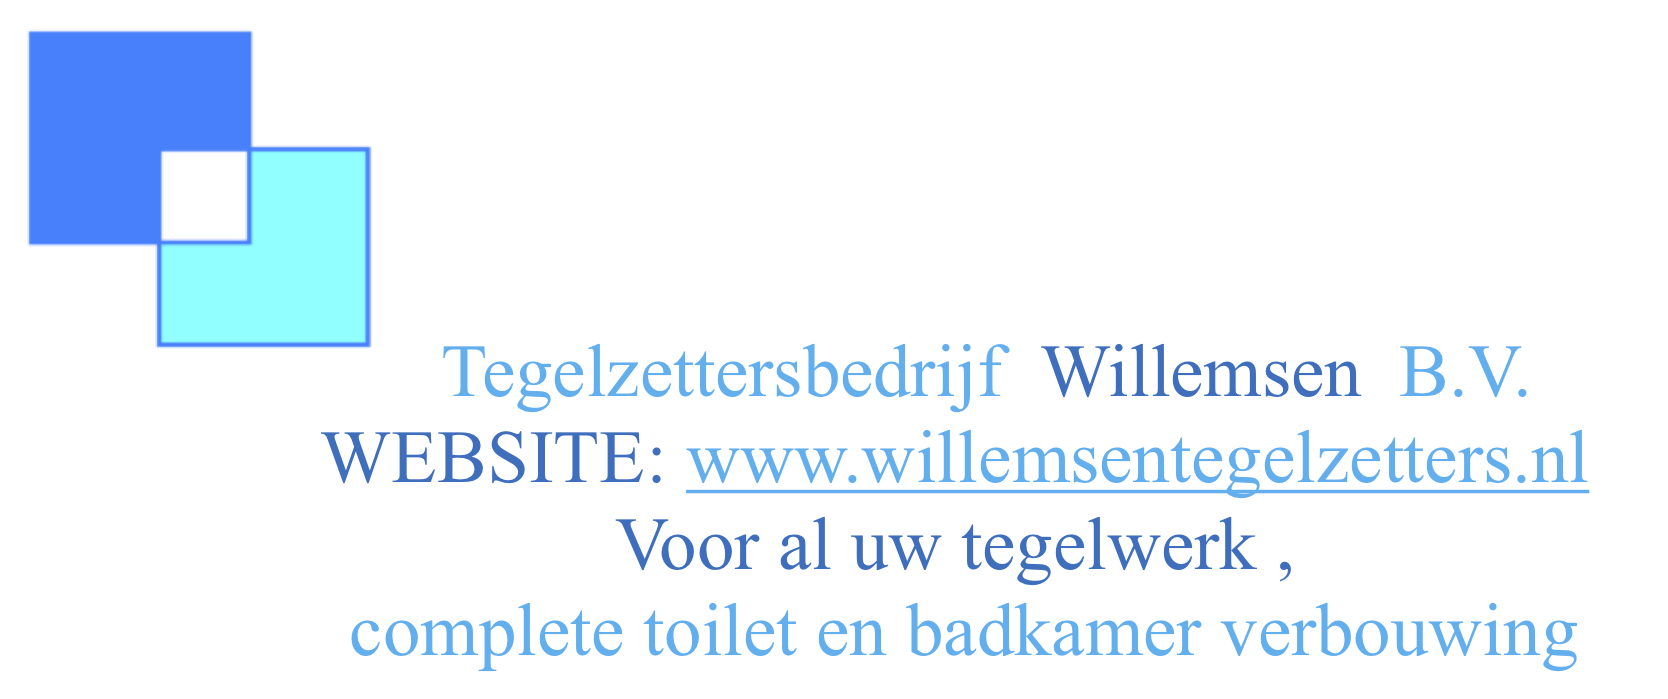 Logo reclameTegelzettersbedrijf Willemsen B.V. kopie (1)